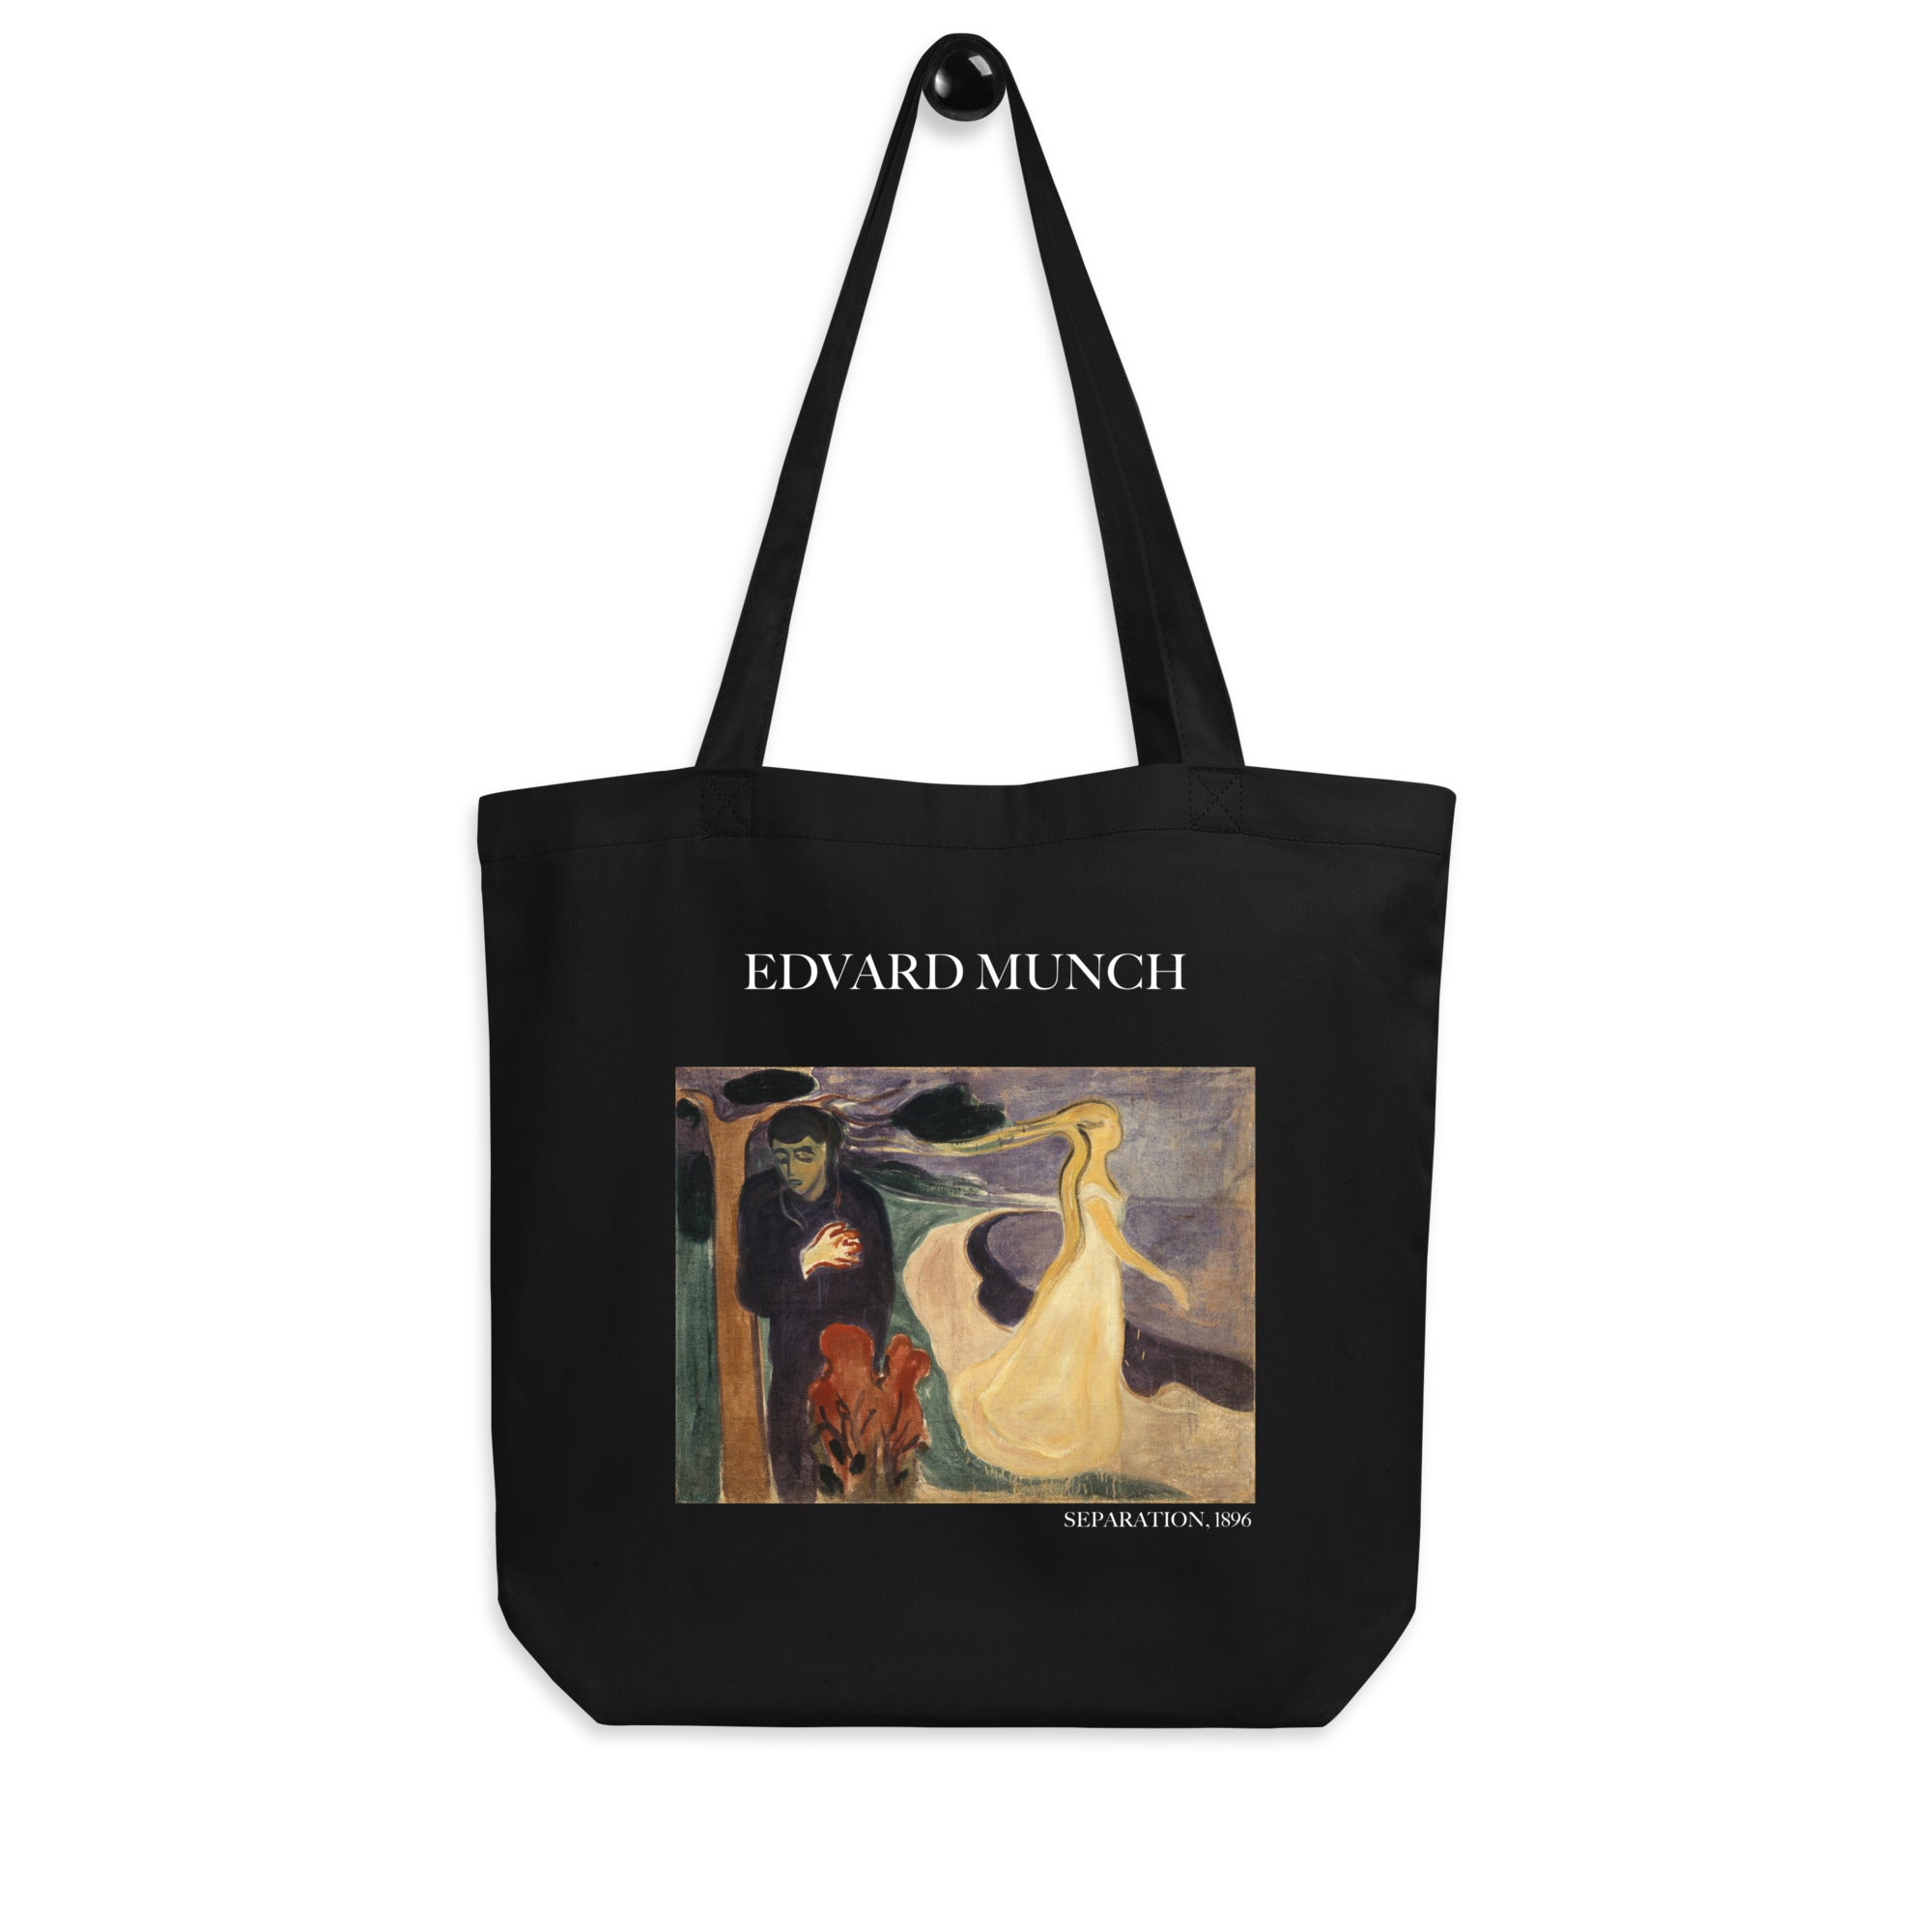 Edvard Munch 'Trennung' berühmtes Gemälde Tragetasche | Umweltfreundliche Kunst Tragetasche